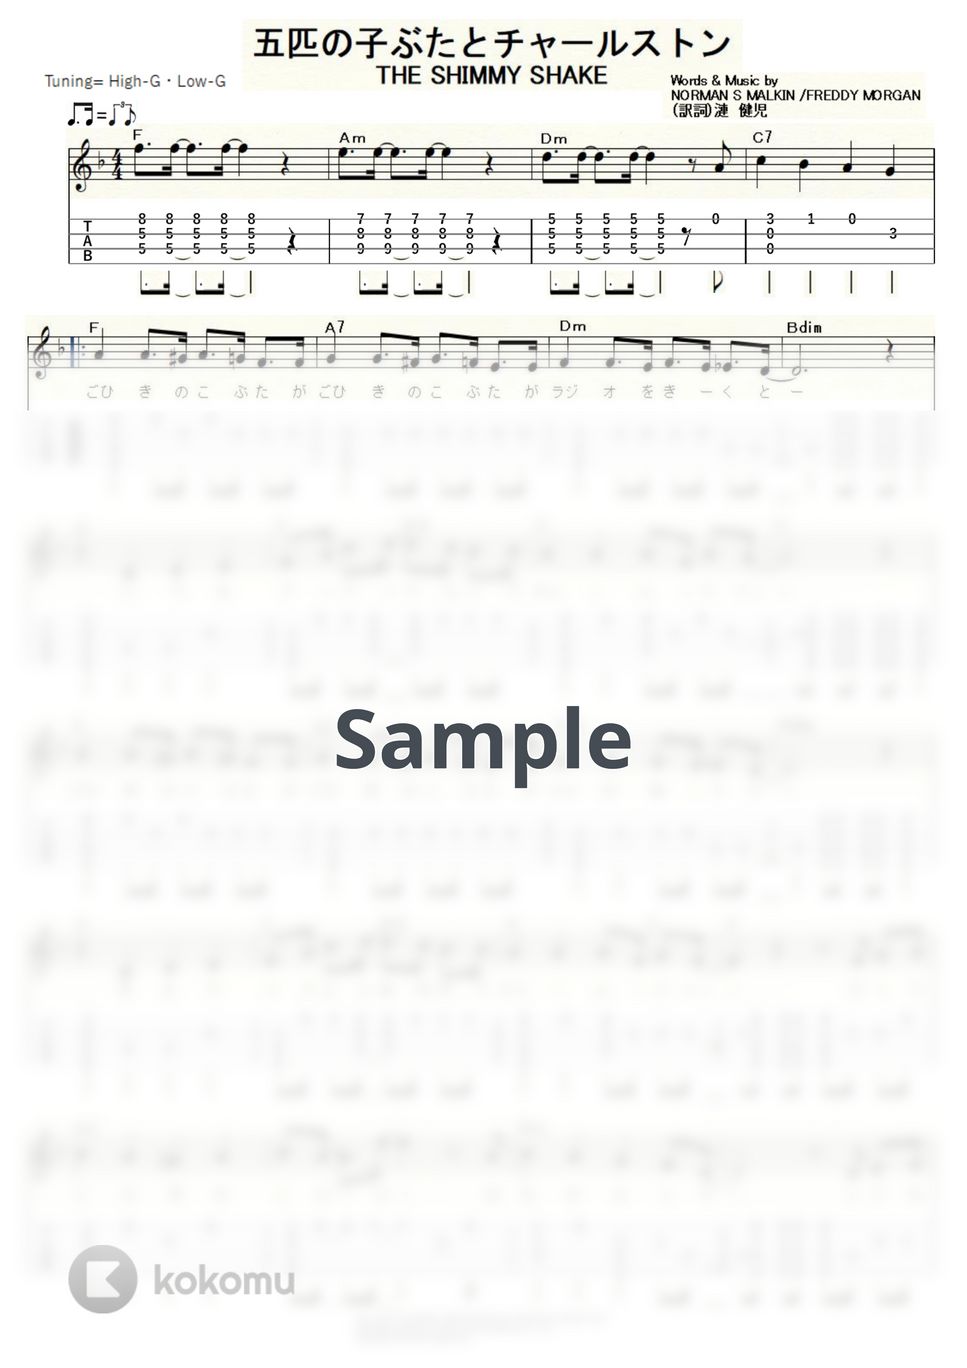 森山加代子 - 五匹の子ぶたとチャールストン (ｳｸﾚﾚｿﾛ/High-G・Low-G/中級) by ukulelepapa